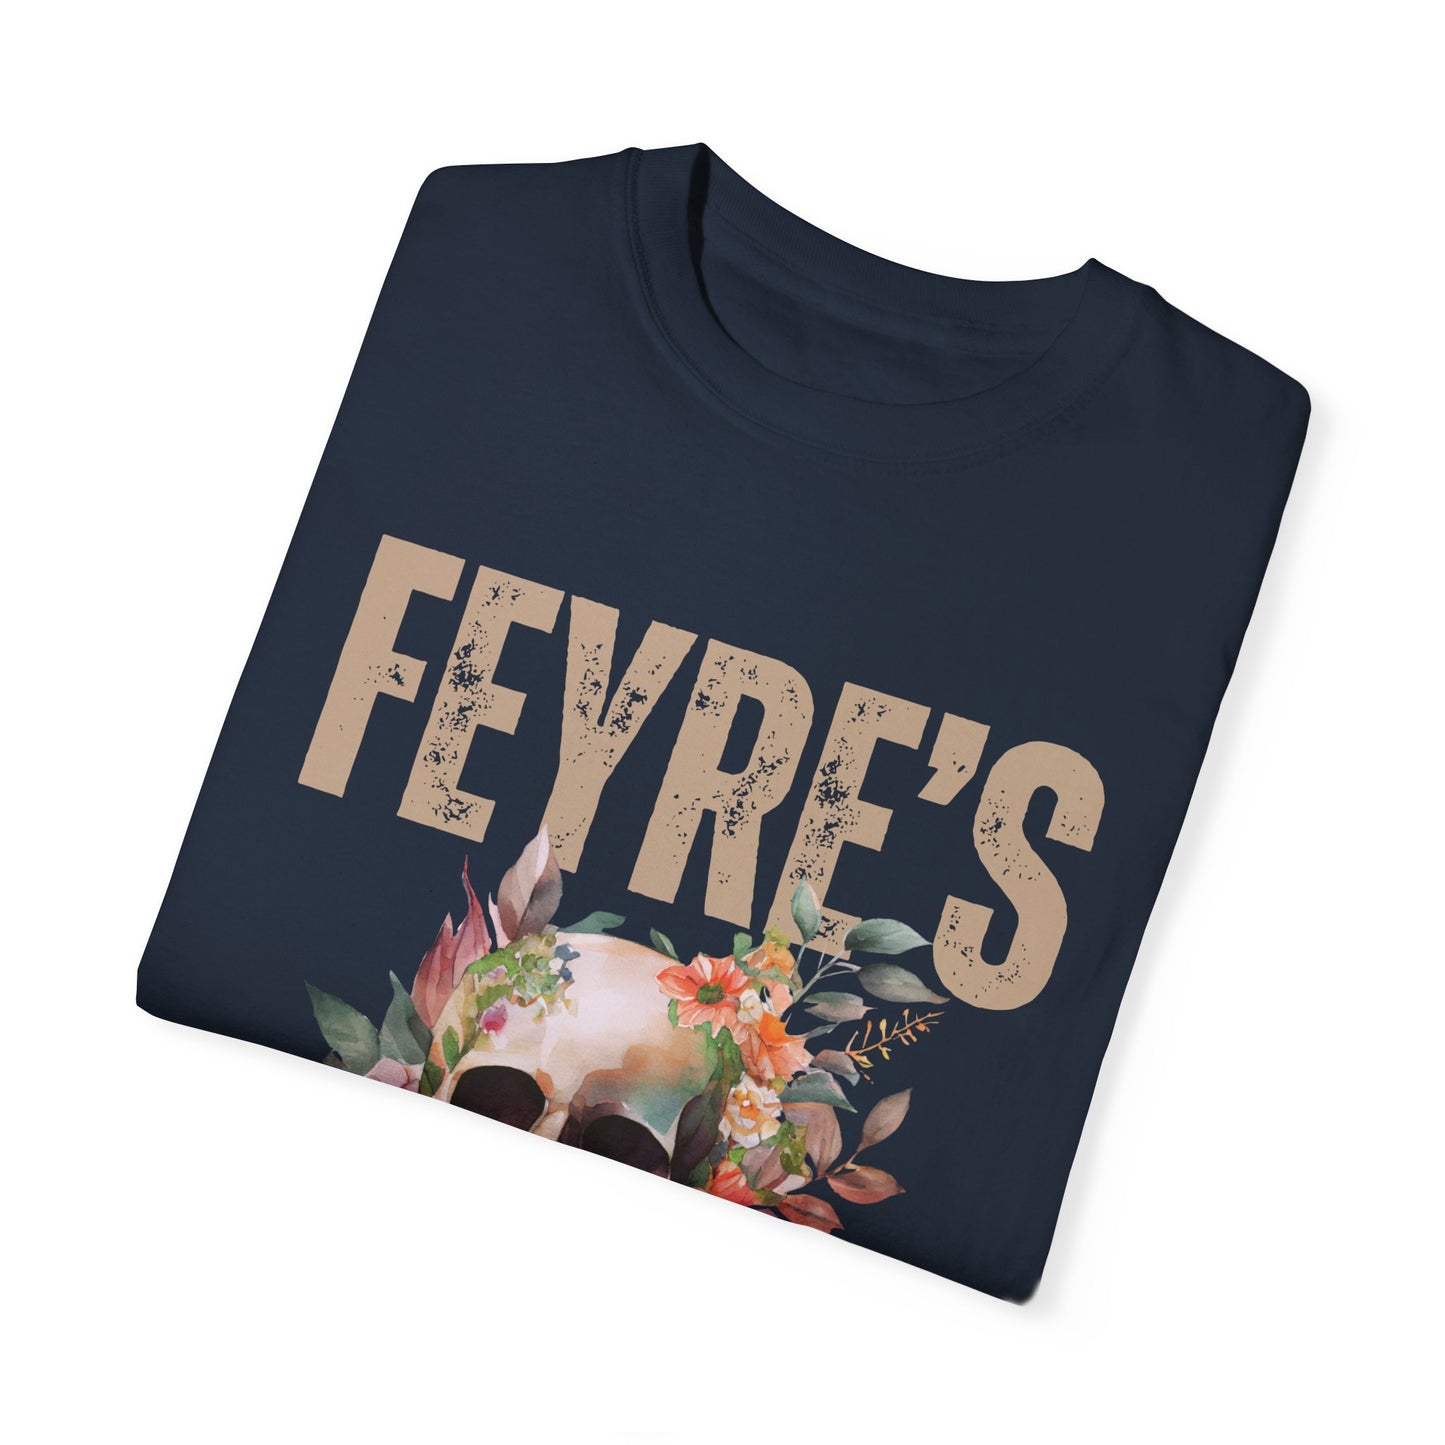 Feyre’s Revenge // PREMIUM TEE